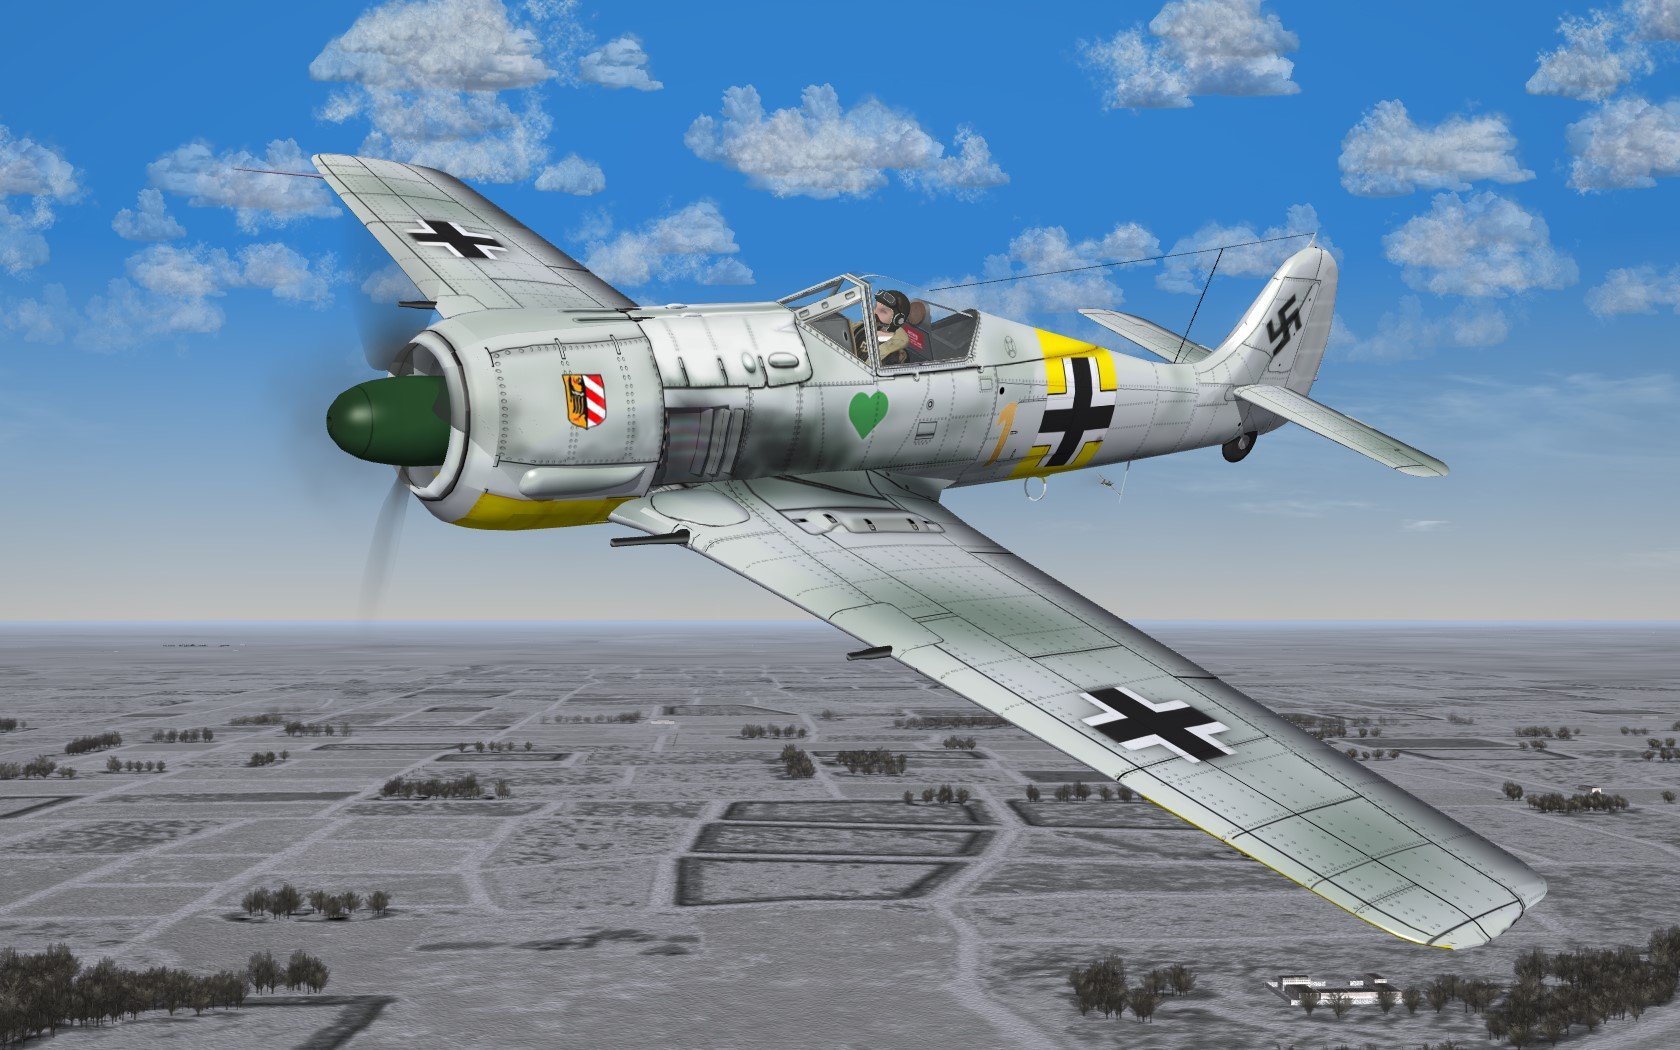 FW-190A4